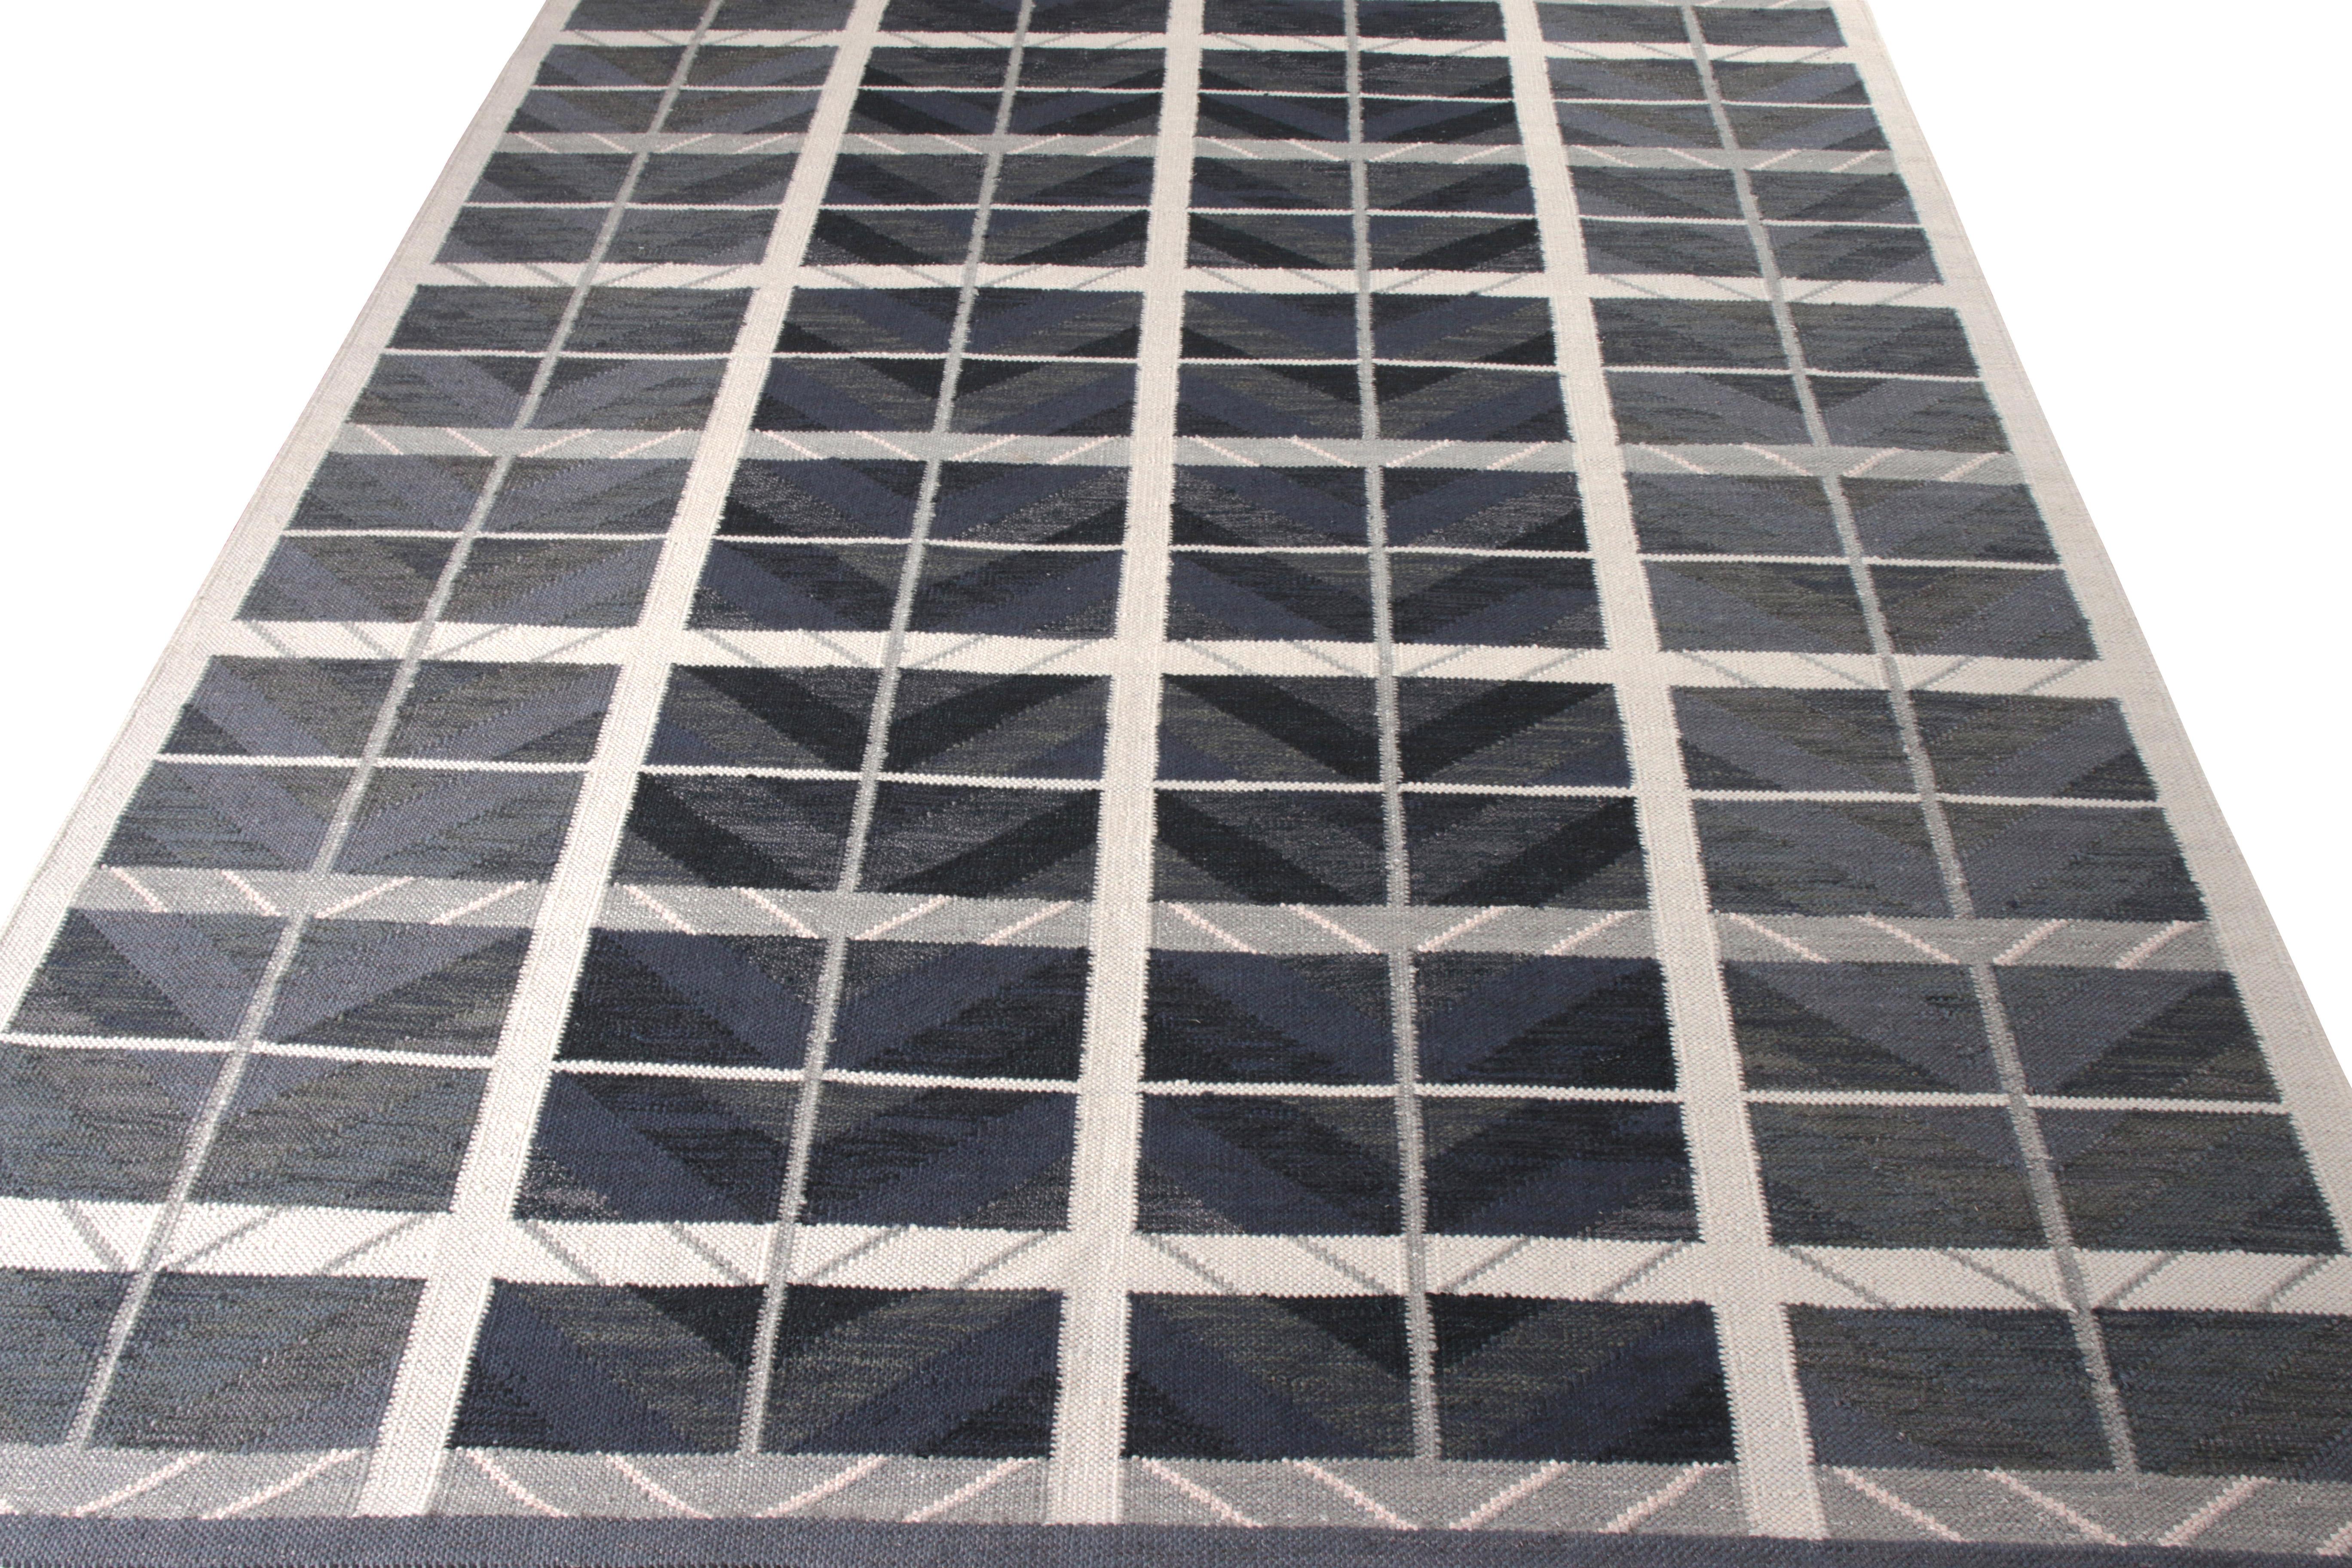 Dieser 9 x 12 Kilim-Teppich ist Teil der skandinavischen Kollektion von Rug & Kilim. Dieser handgewebte Wollteppich ist eine Hommage an die schwedische Moderne mit einem neuen großflächigen geometrischen Muster, das an die Designinspirationen aus